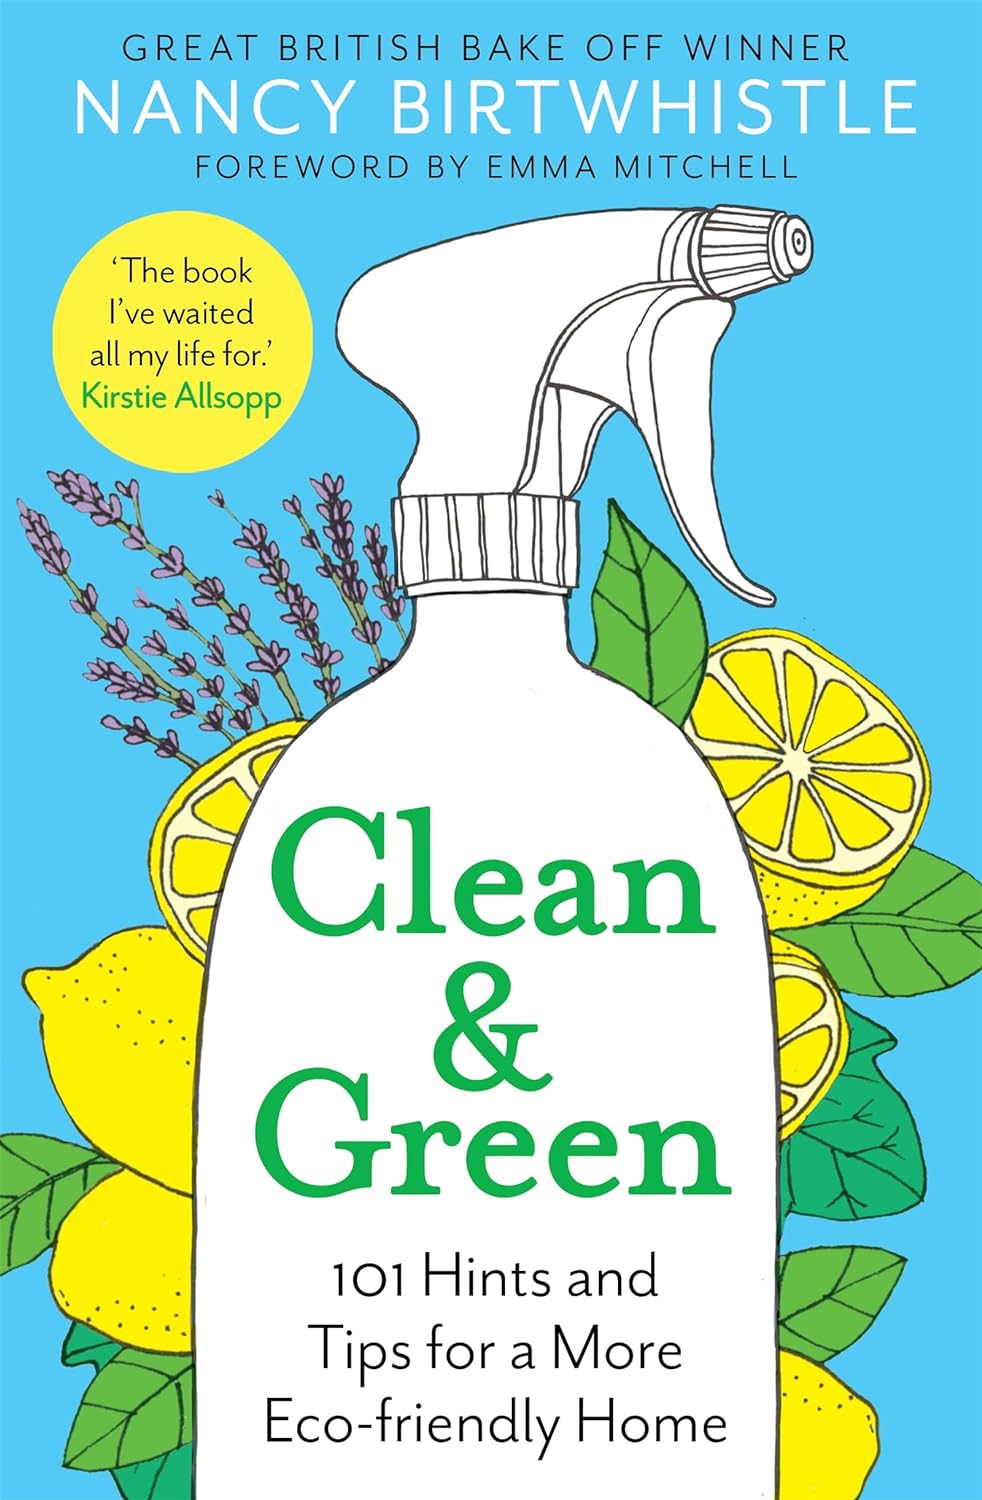 CLEAN & GREEN BY NANCY BIRTWHISTLE